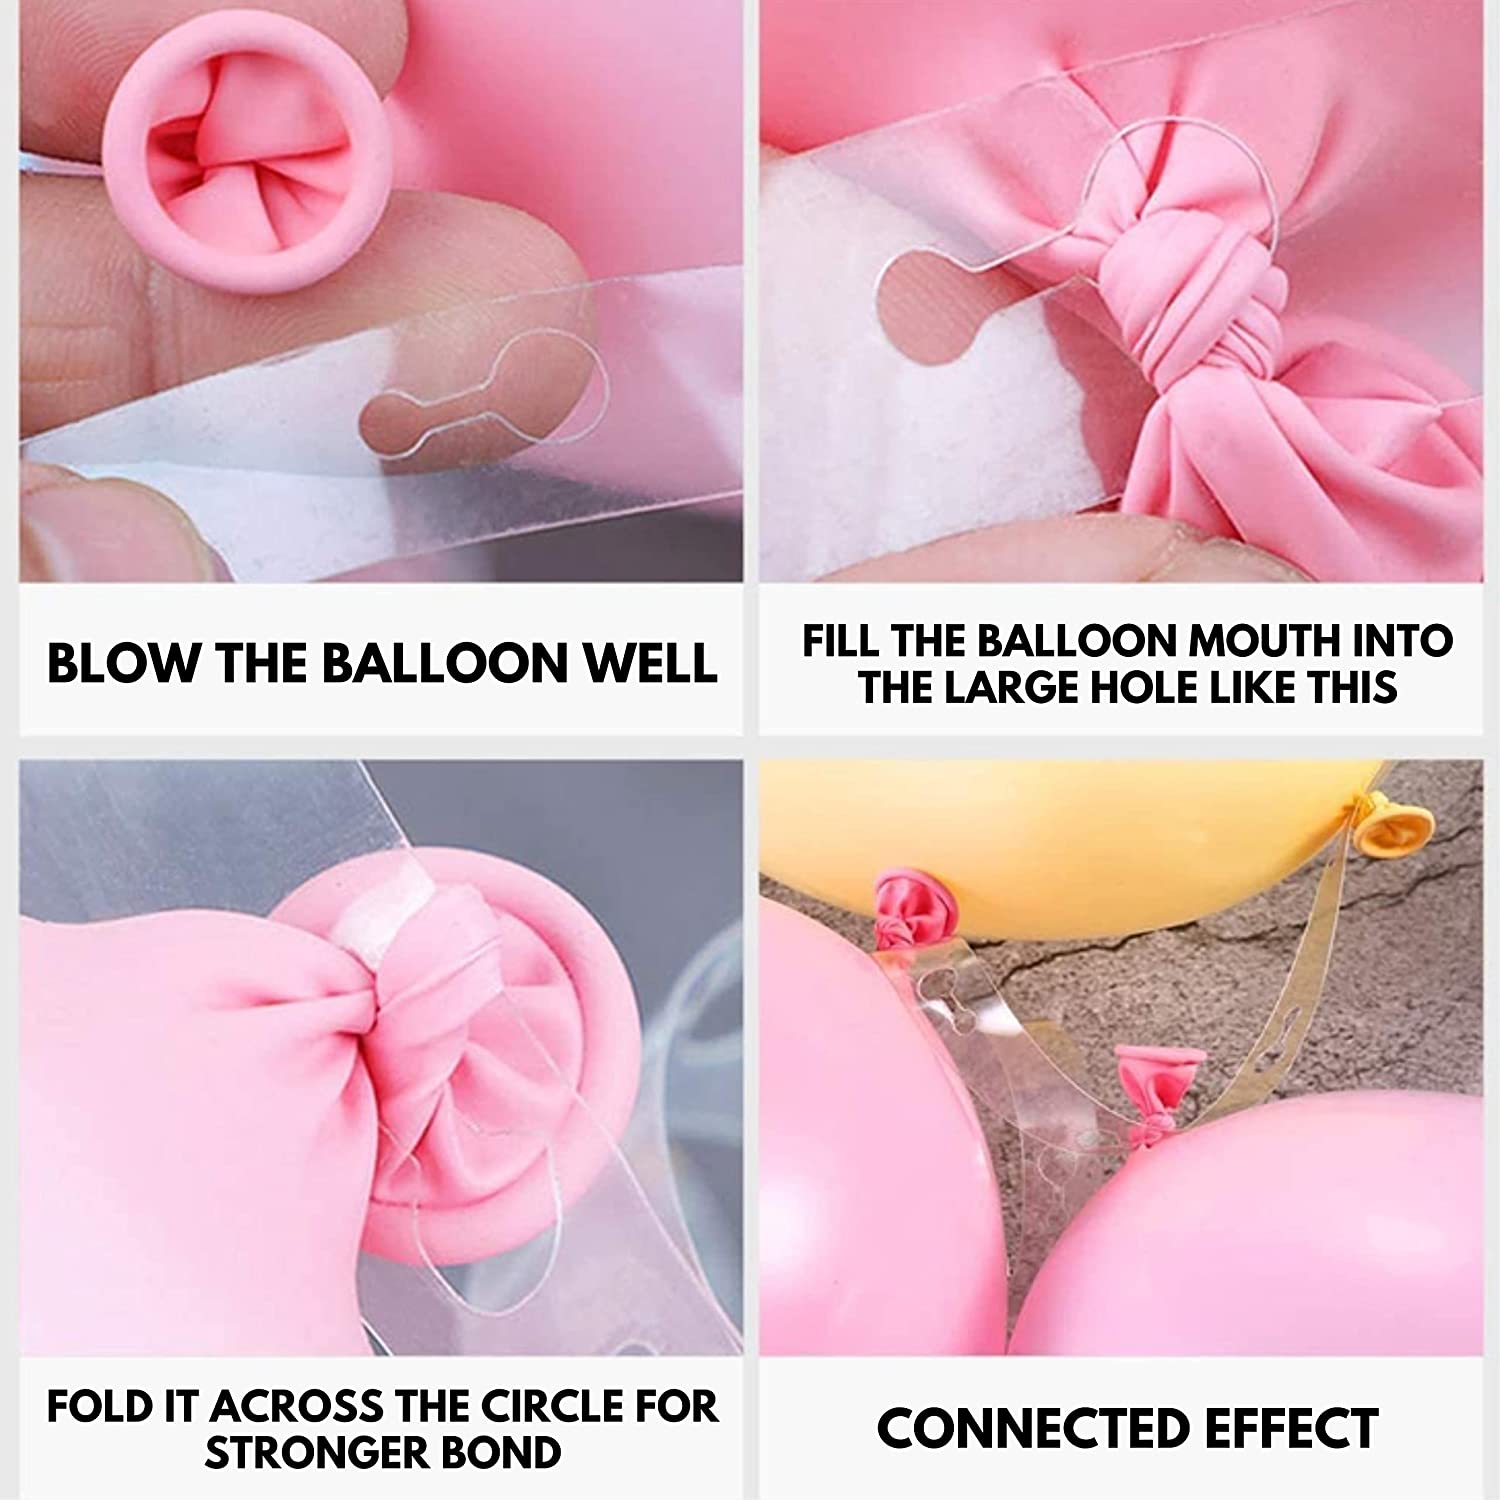 Pink Latex Balloon, Gold Metallic Balloon, RoseGold Confetti Balloon, RoseGold Love Foil & Pink Tissue Tassel(76 Pieces)